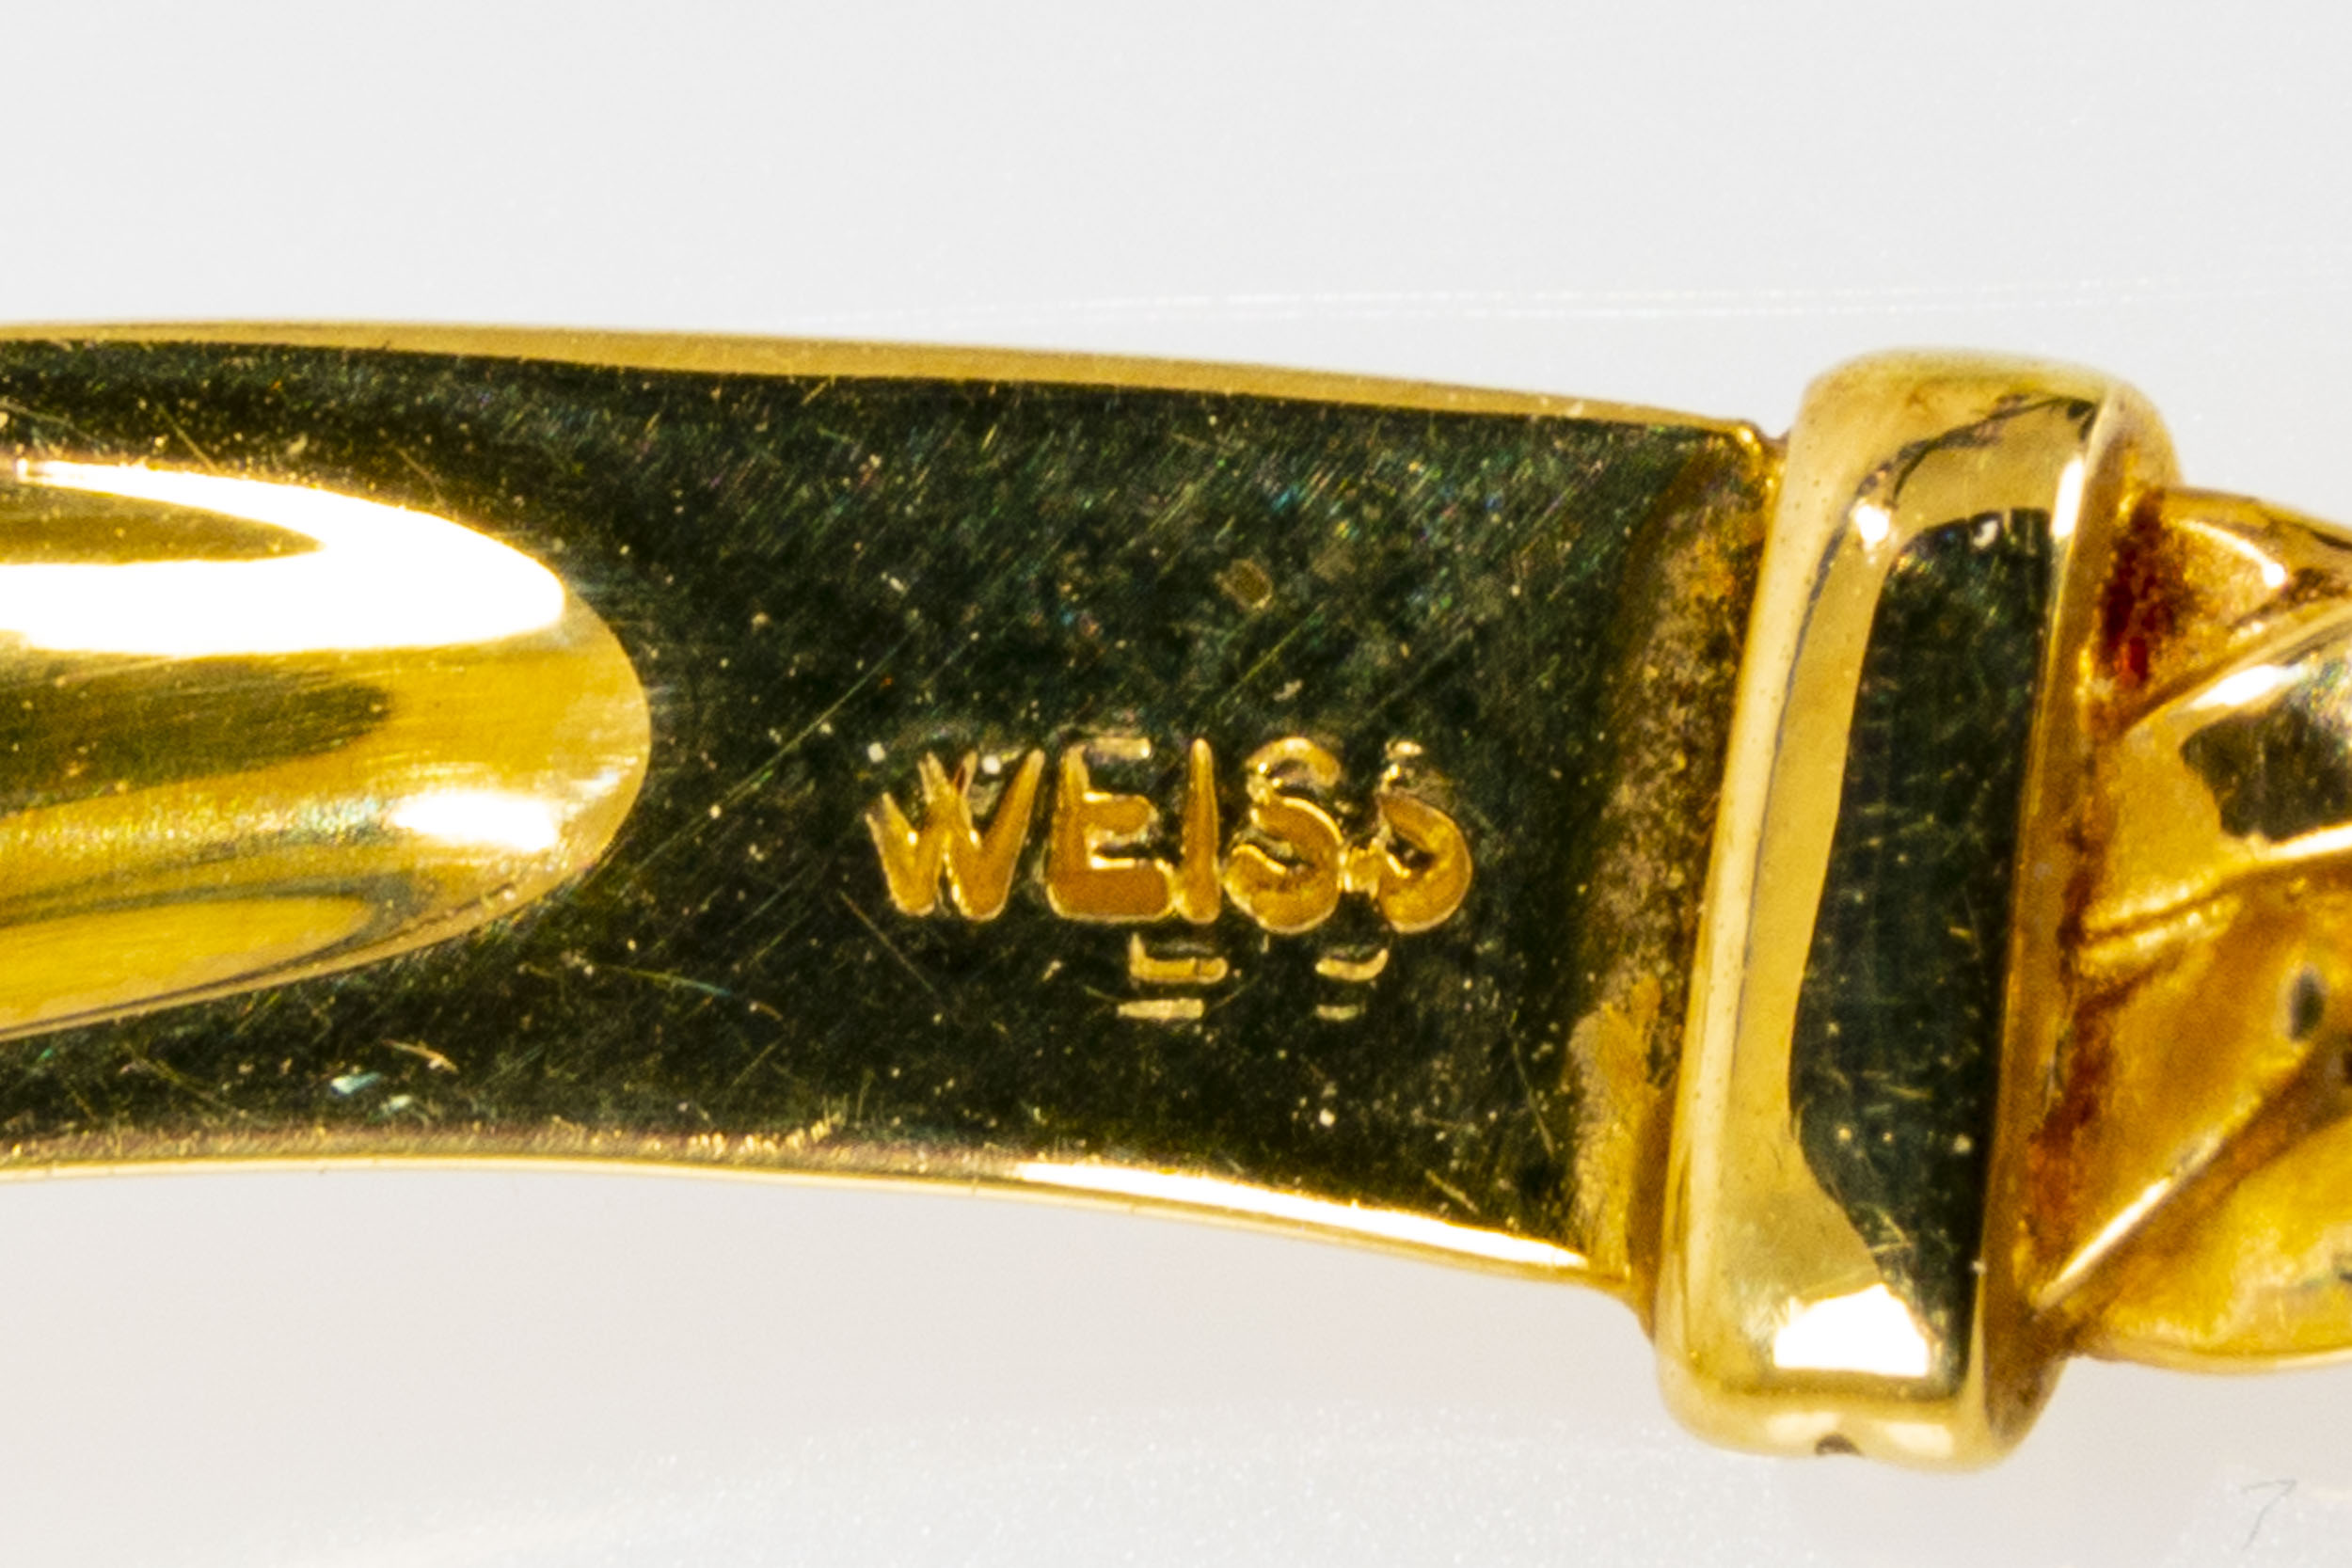 Gliedercollier aus 14 kt. Gelbgold in zeitlos attraktivem Design aus dem Hause "Weiss". Das bogenfö - Image 9 of 10